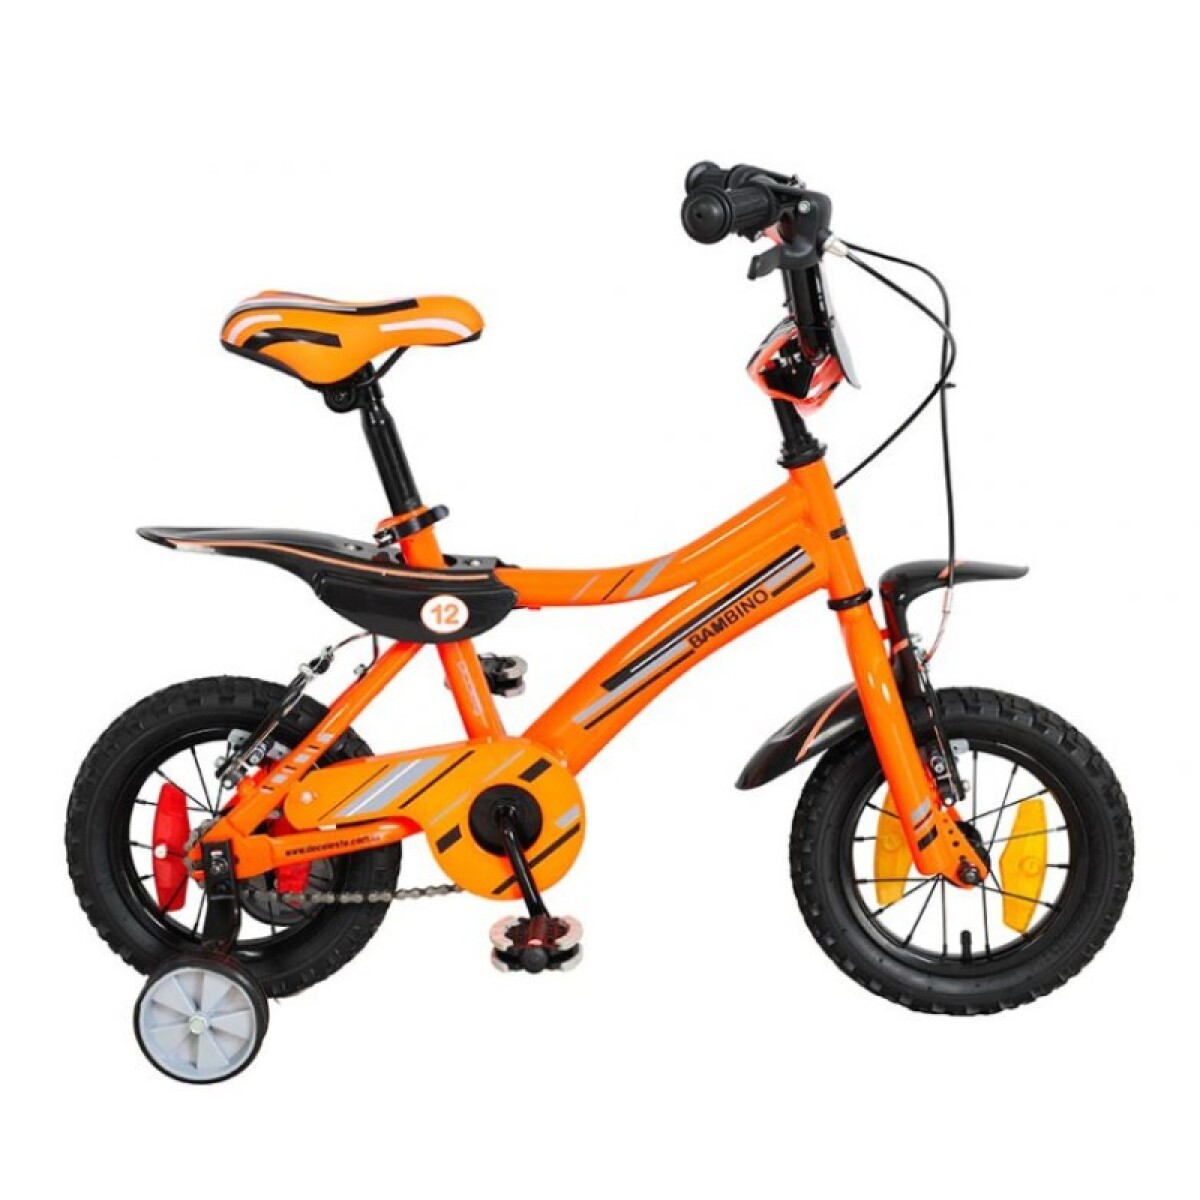 Bicicleta Baccio R.12 Niño Bambino - Naranja/negro 